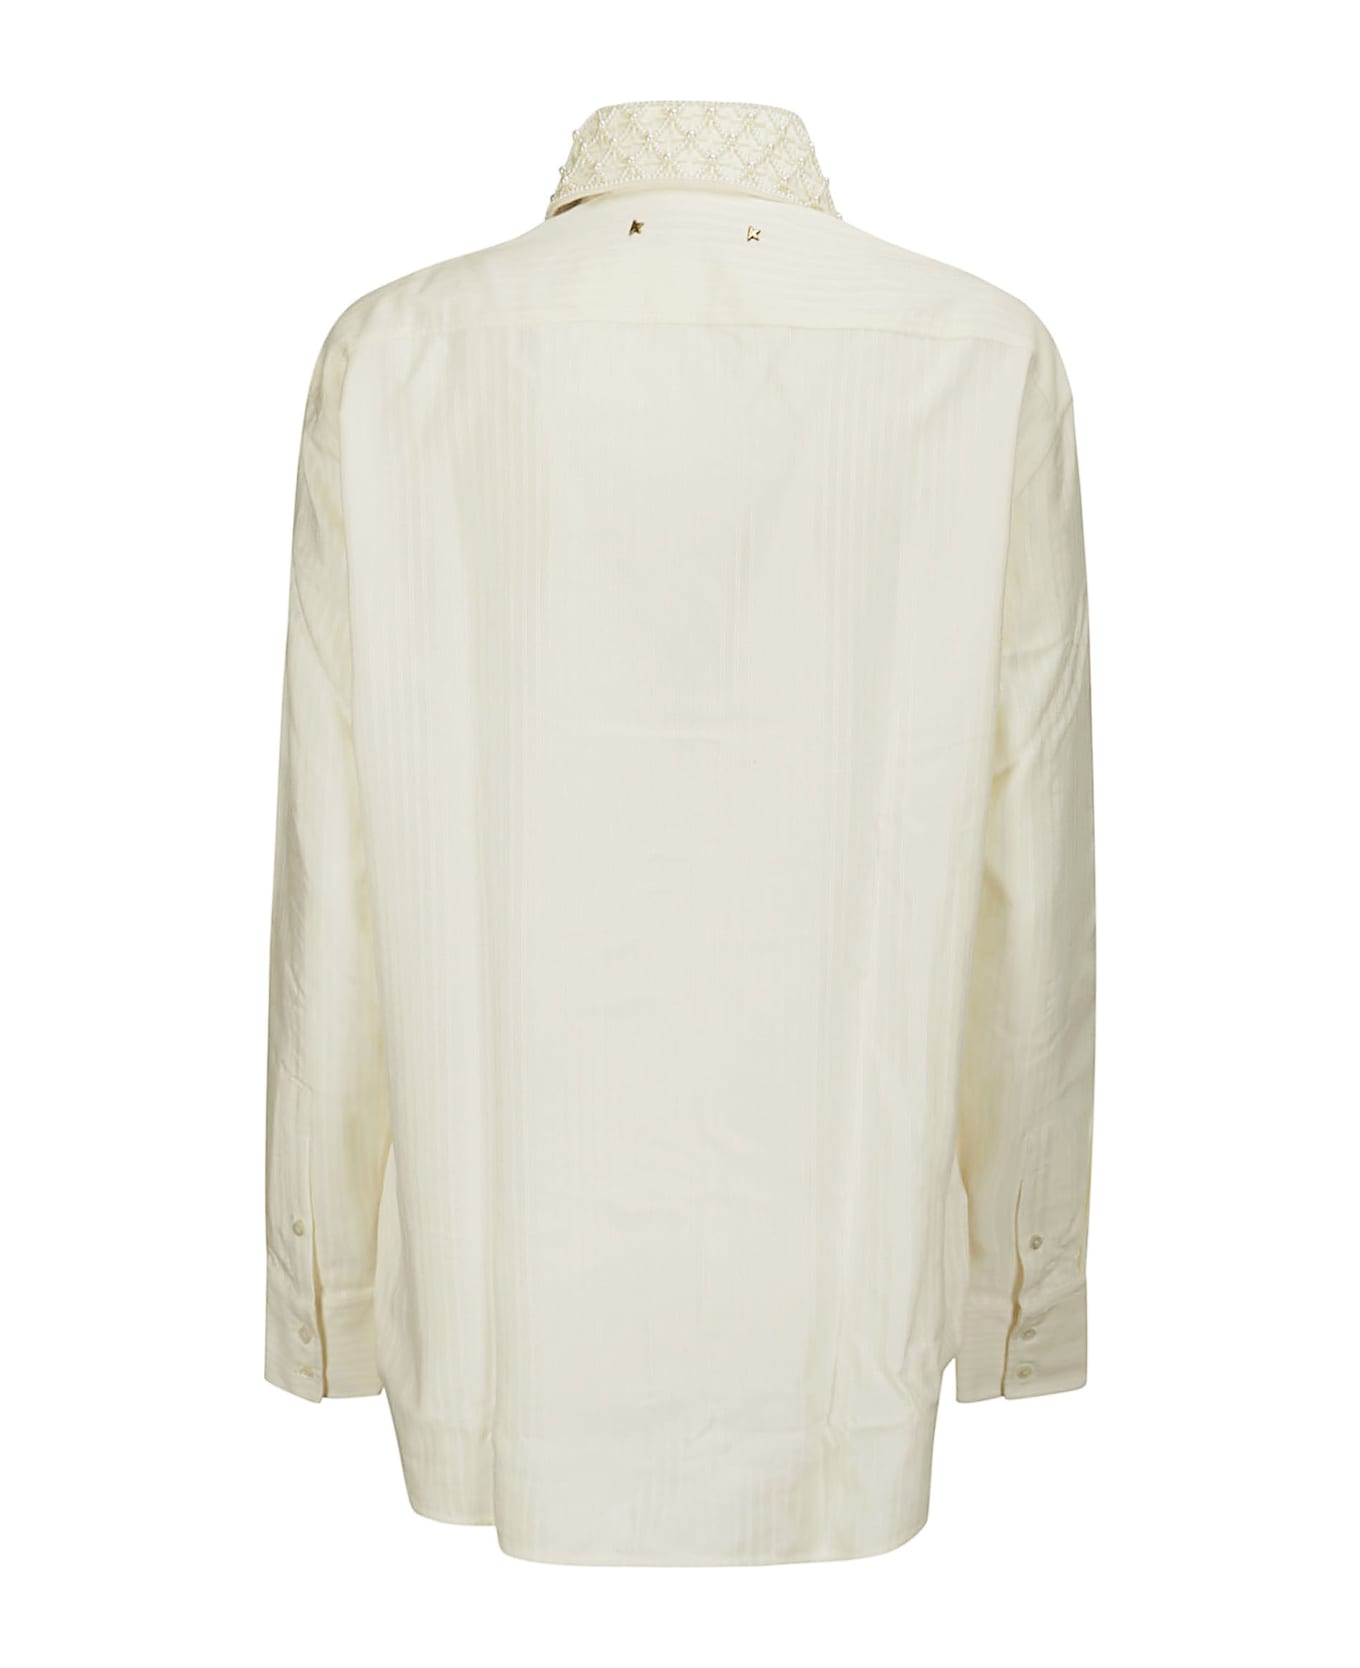 Golden Goose Long Sleeved Embellished Shirt - HERITAGE WHITE